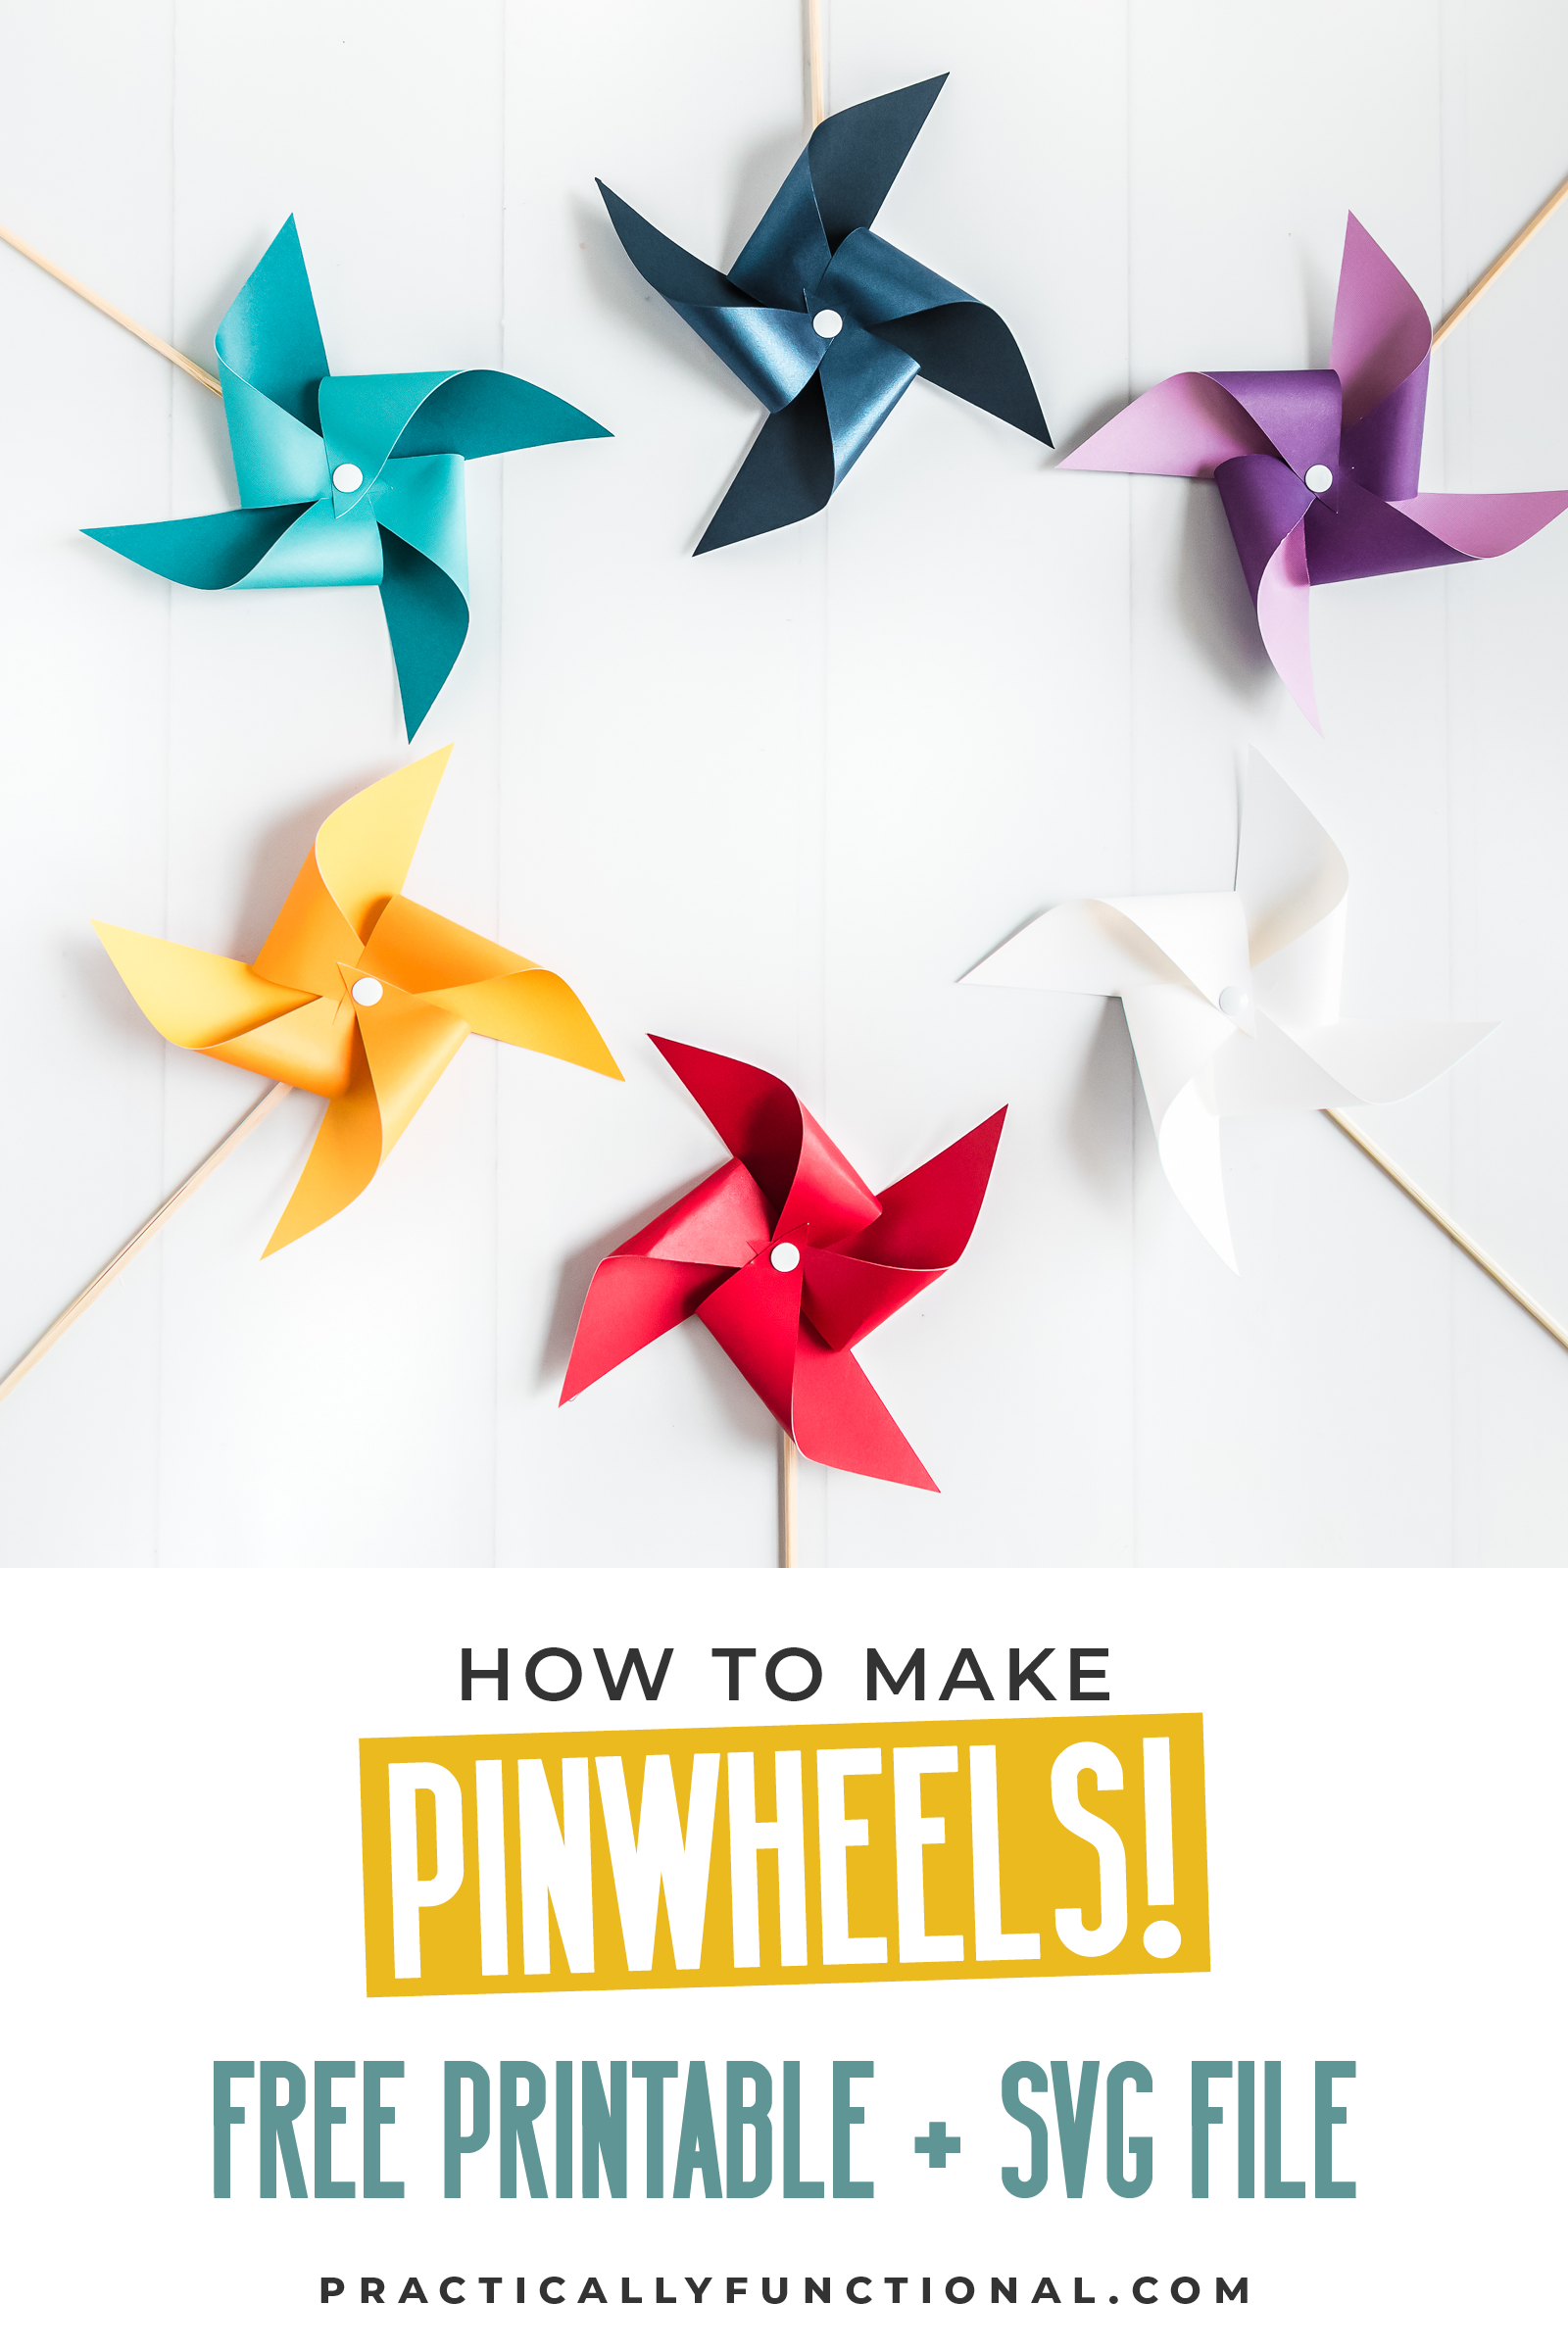 Free Printable Printable Pinwheel Template